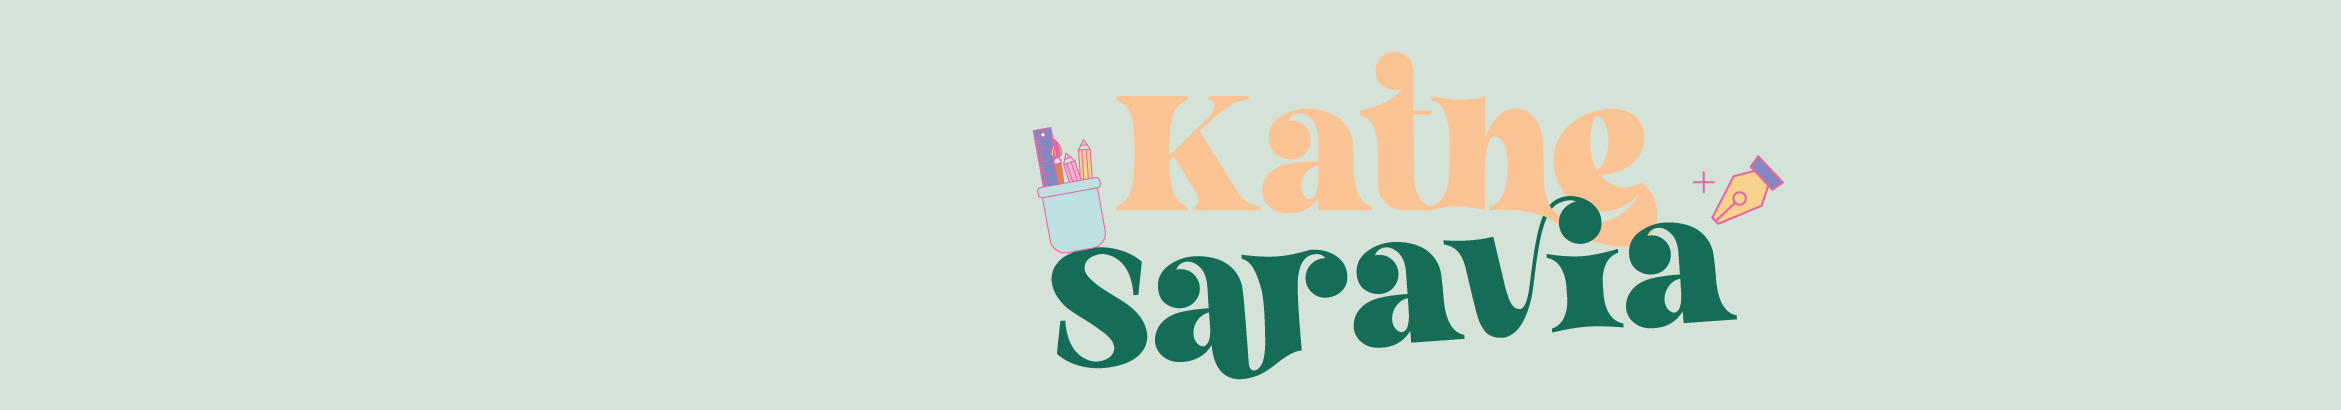 Kathe Saravia 的個人檔案橫幅